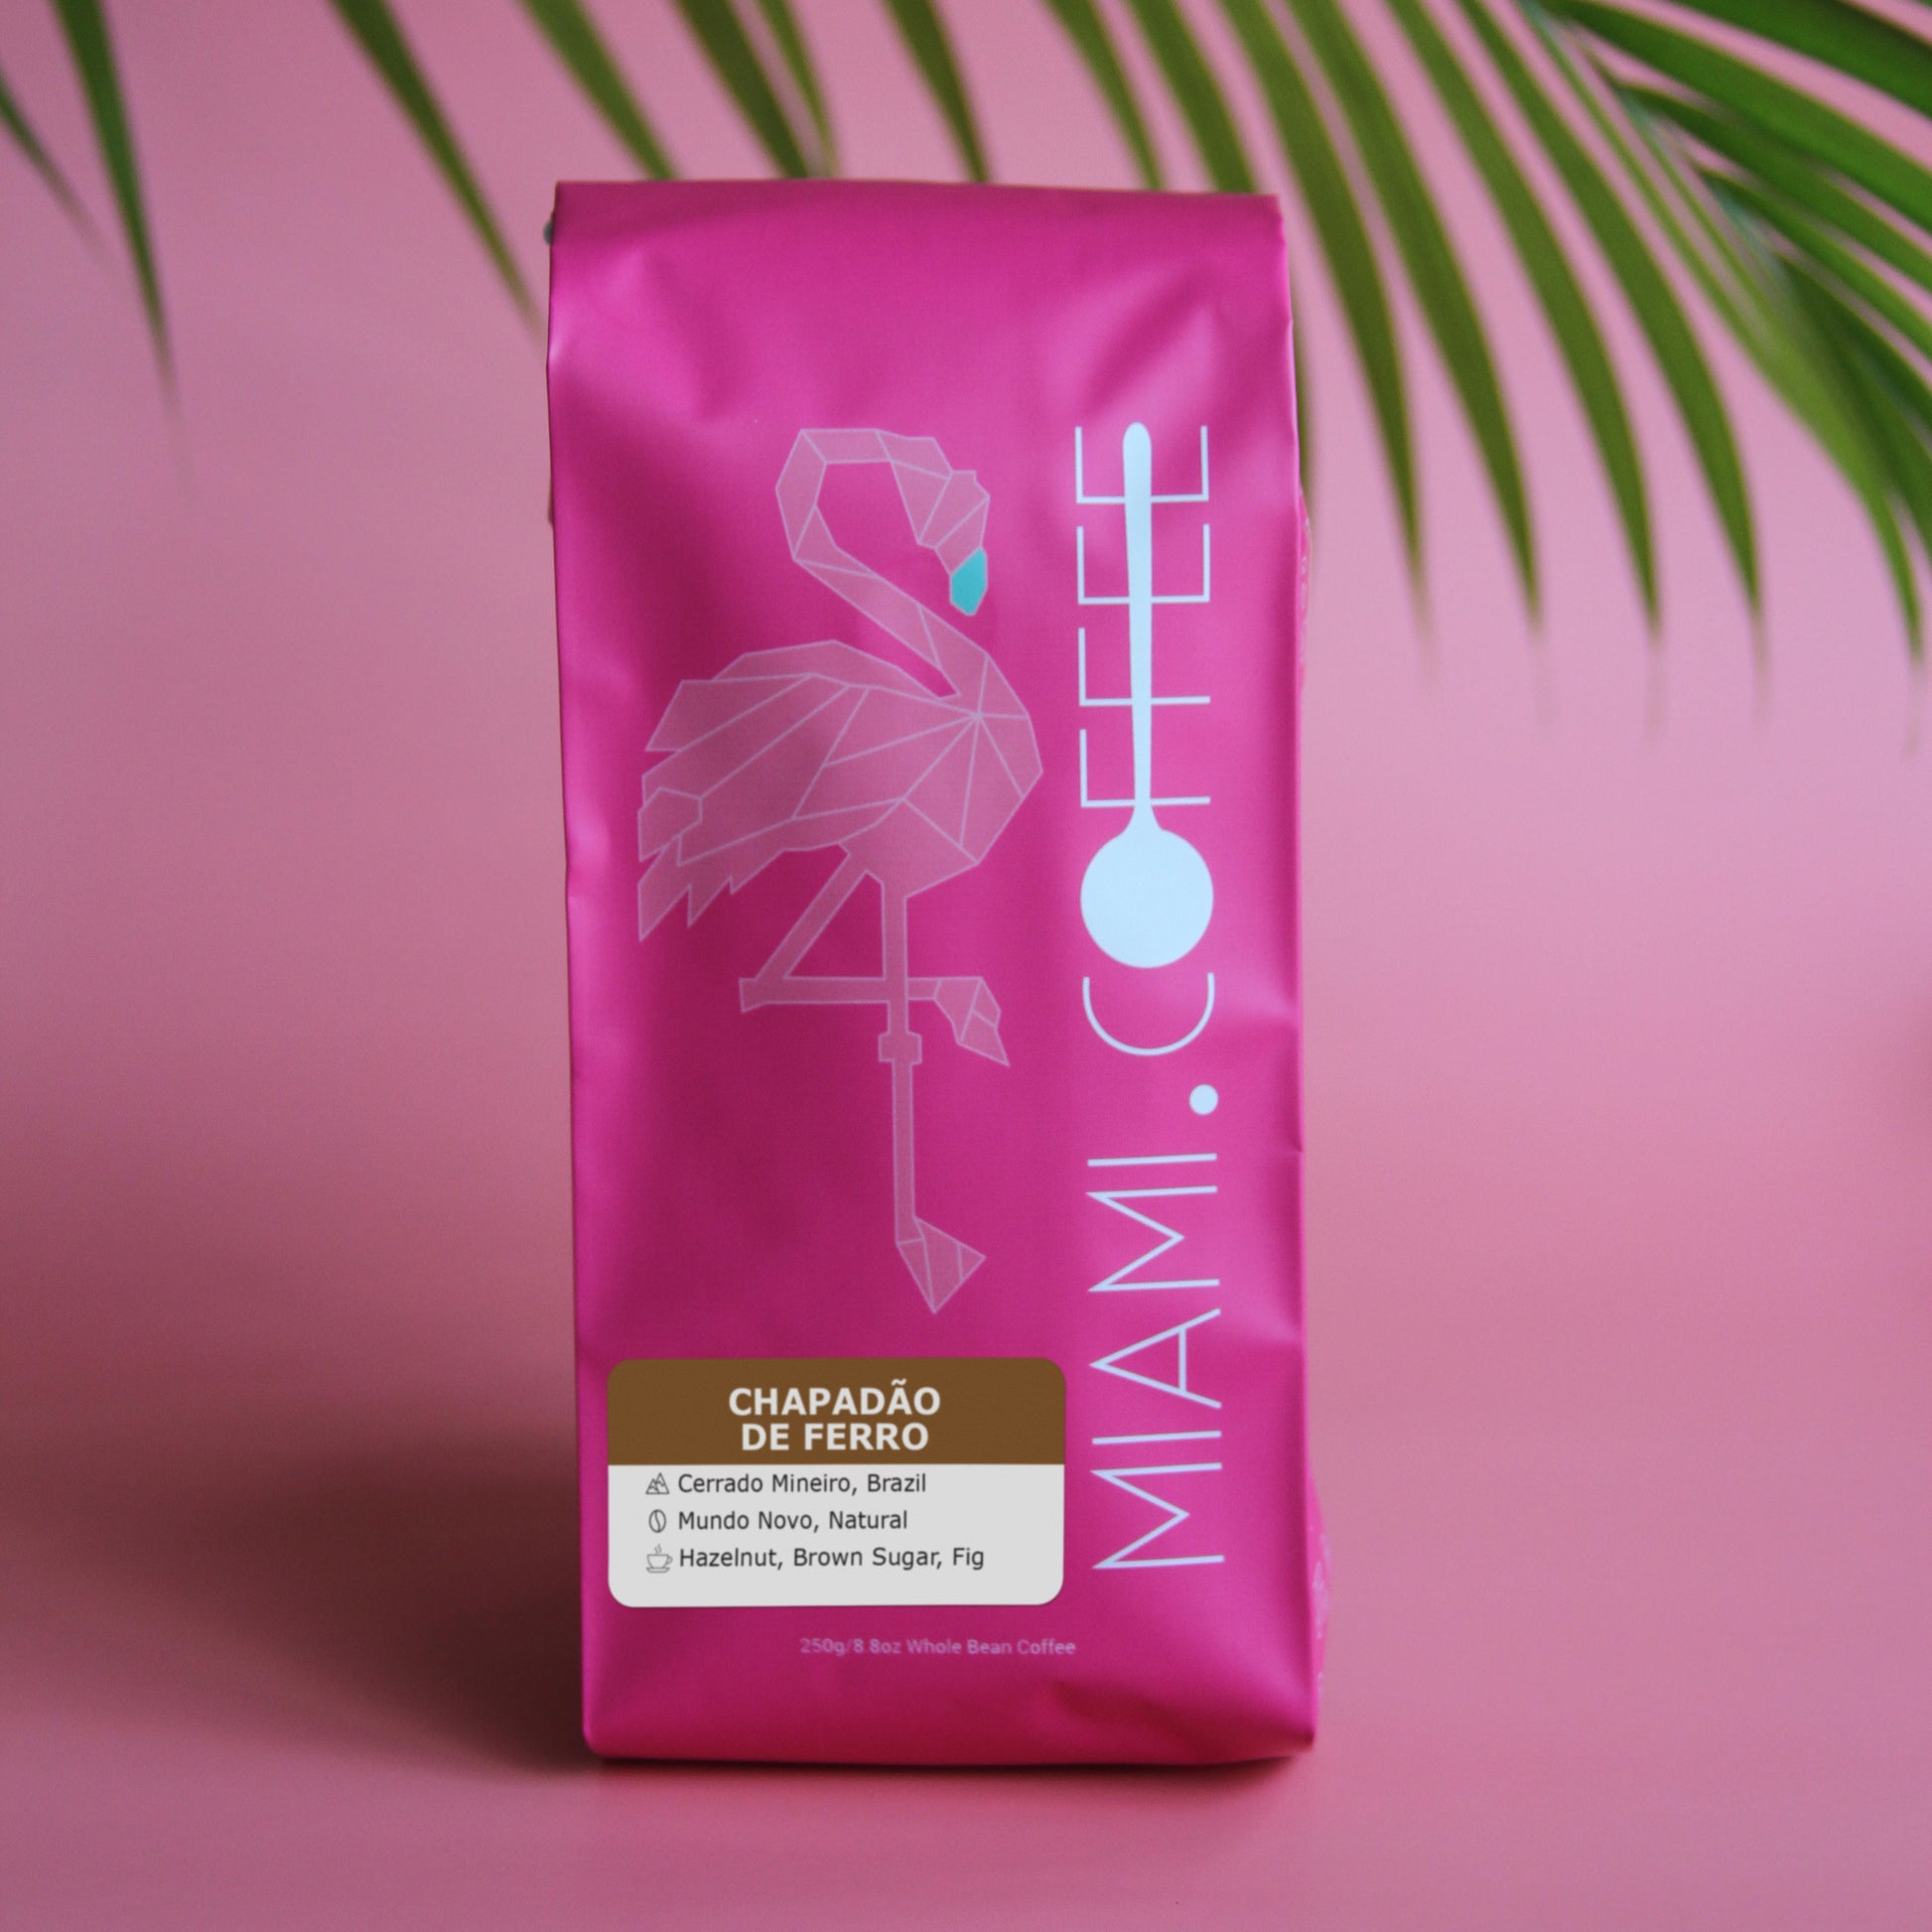 250 gram bag of Miami dot Coffee - Chapadão de Ferro, from Cerrado Mineiro Brazil. Mundo Novo Cultivar, Natural Process. Tasting Notes - Hazelnut, Brown Sugar, Fig